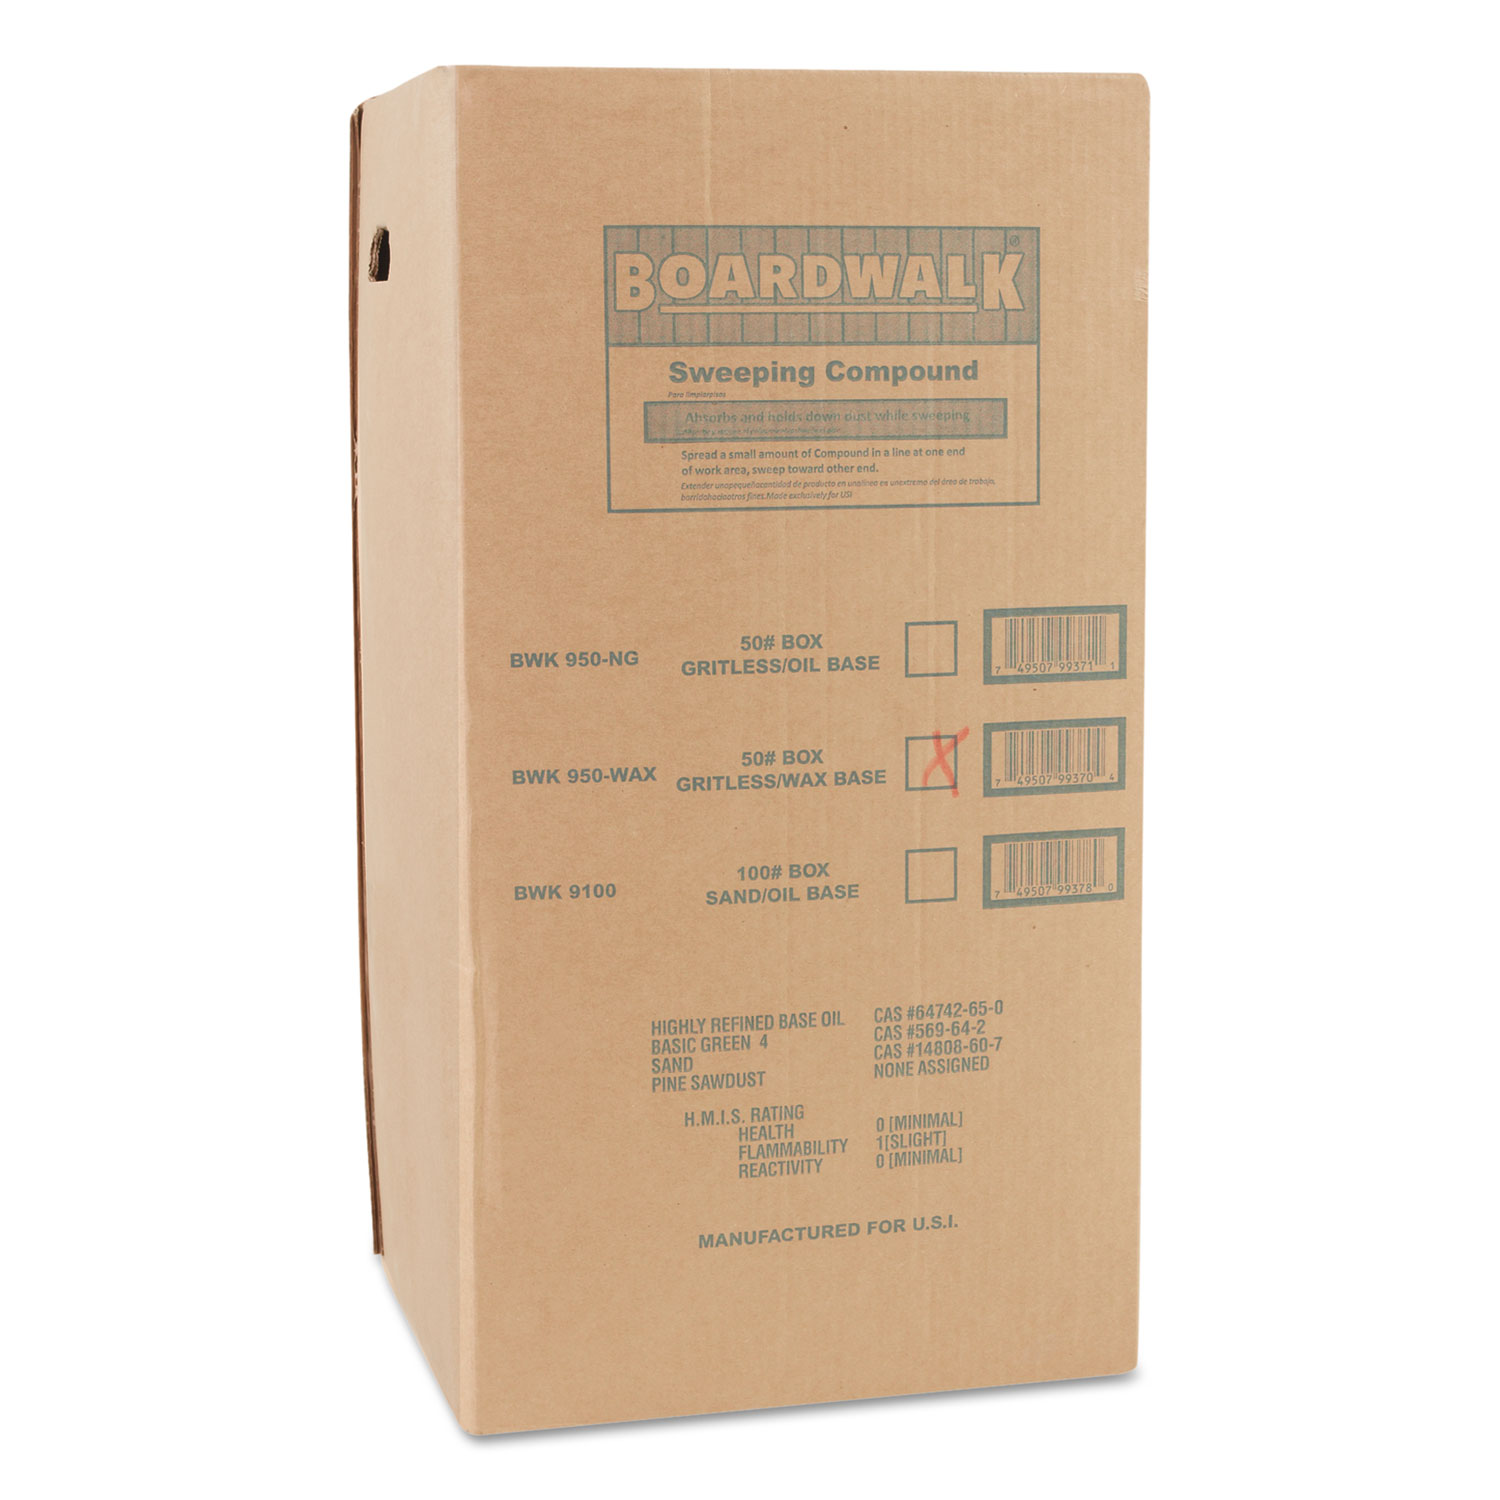  Boardwalk BWK4065 Wax Base Sweeping Compound, Granular, 50 lb Box (BWK4065) 